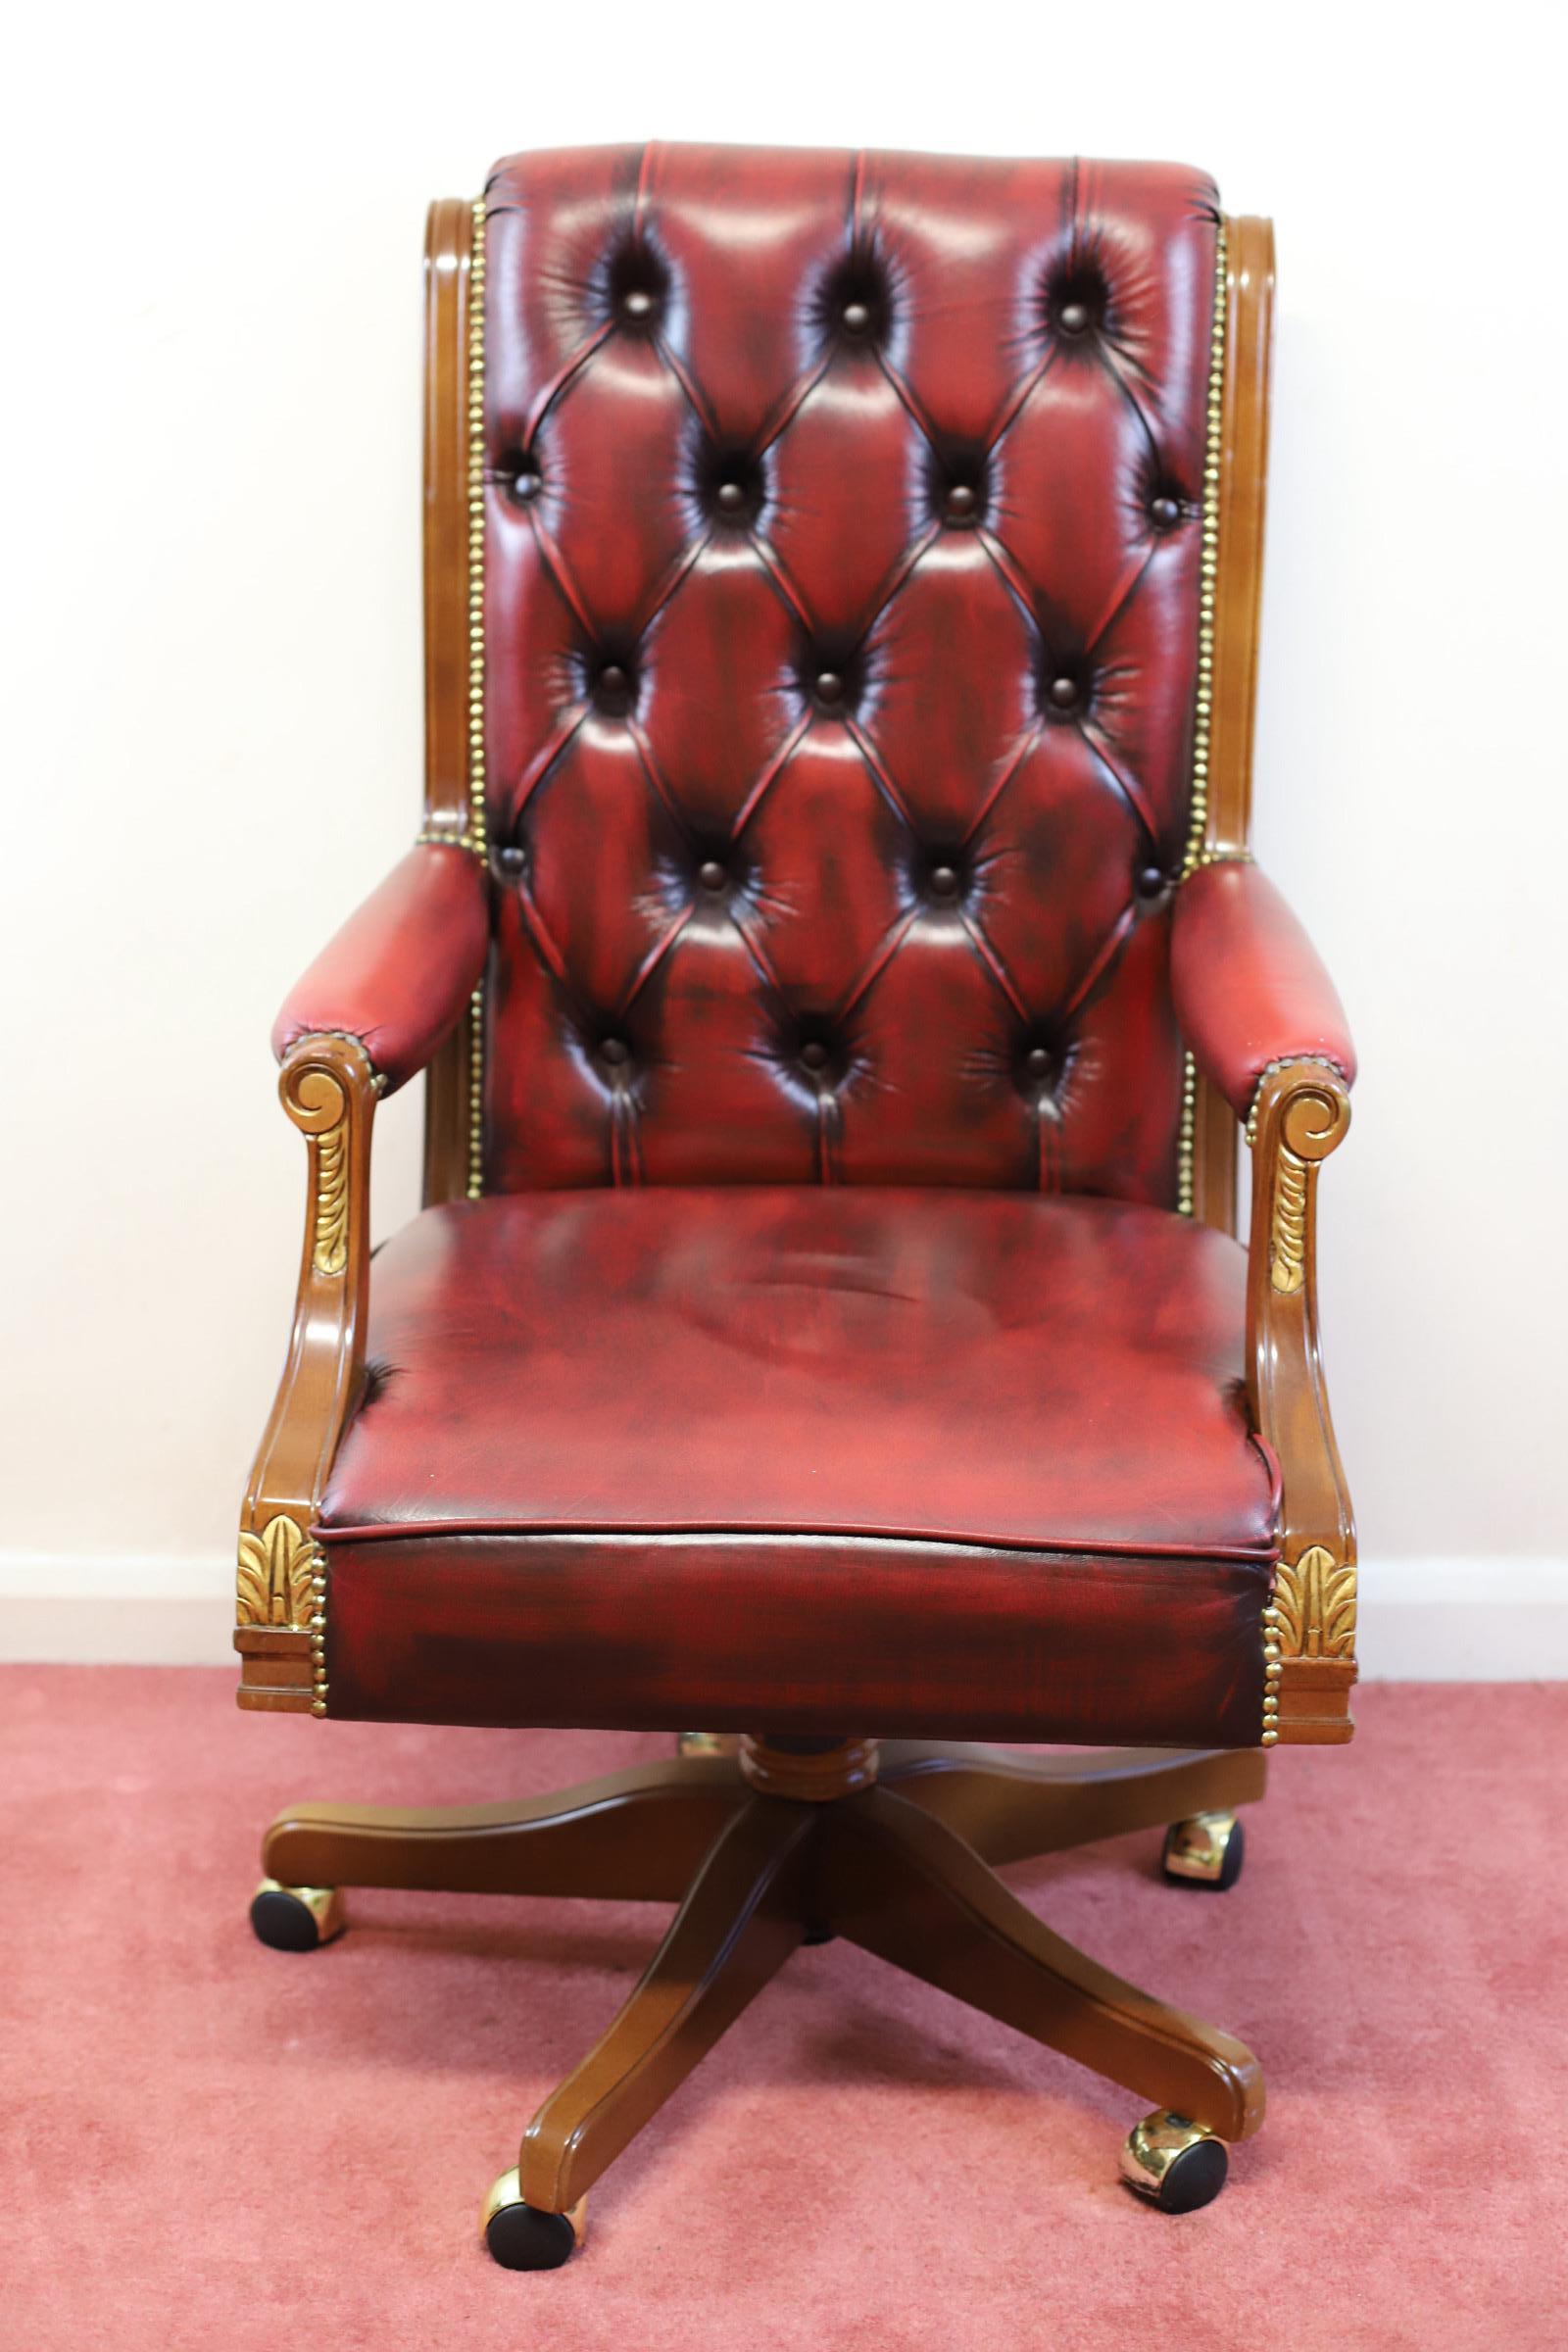 Nous avons le plaisir d'offrir à la vente cette belle chaise de bureau pivotante Barnini Oseo - 'Reggenza', dossier haut à volutes, tapissée de cuir rouge sang boutonné avec clous dorés, accoudoirs décorés de montures feuillagées dorées, sur